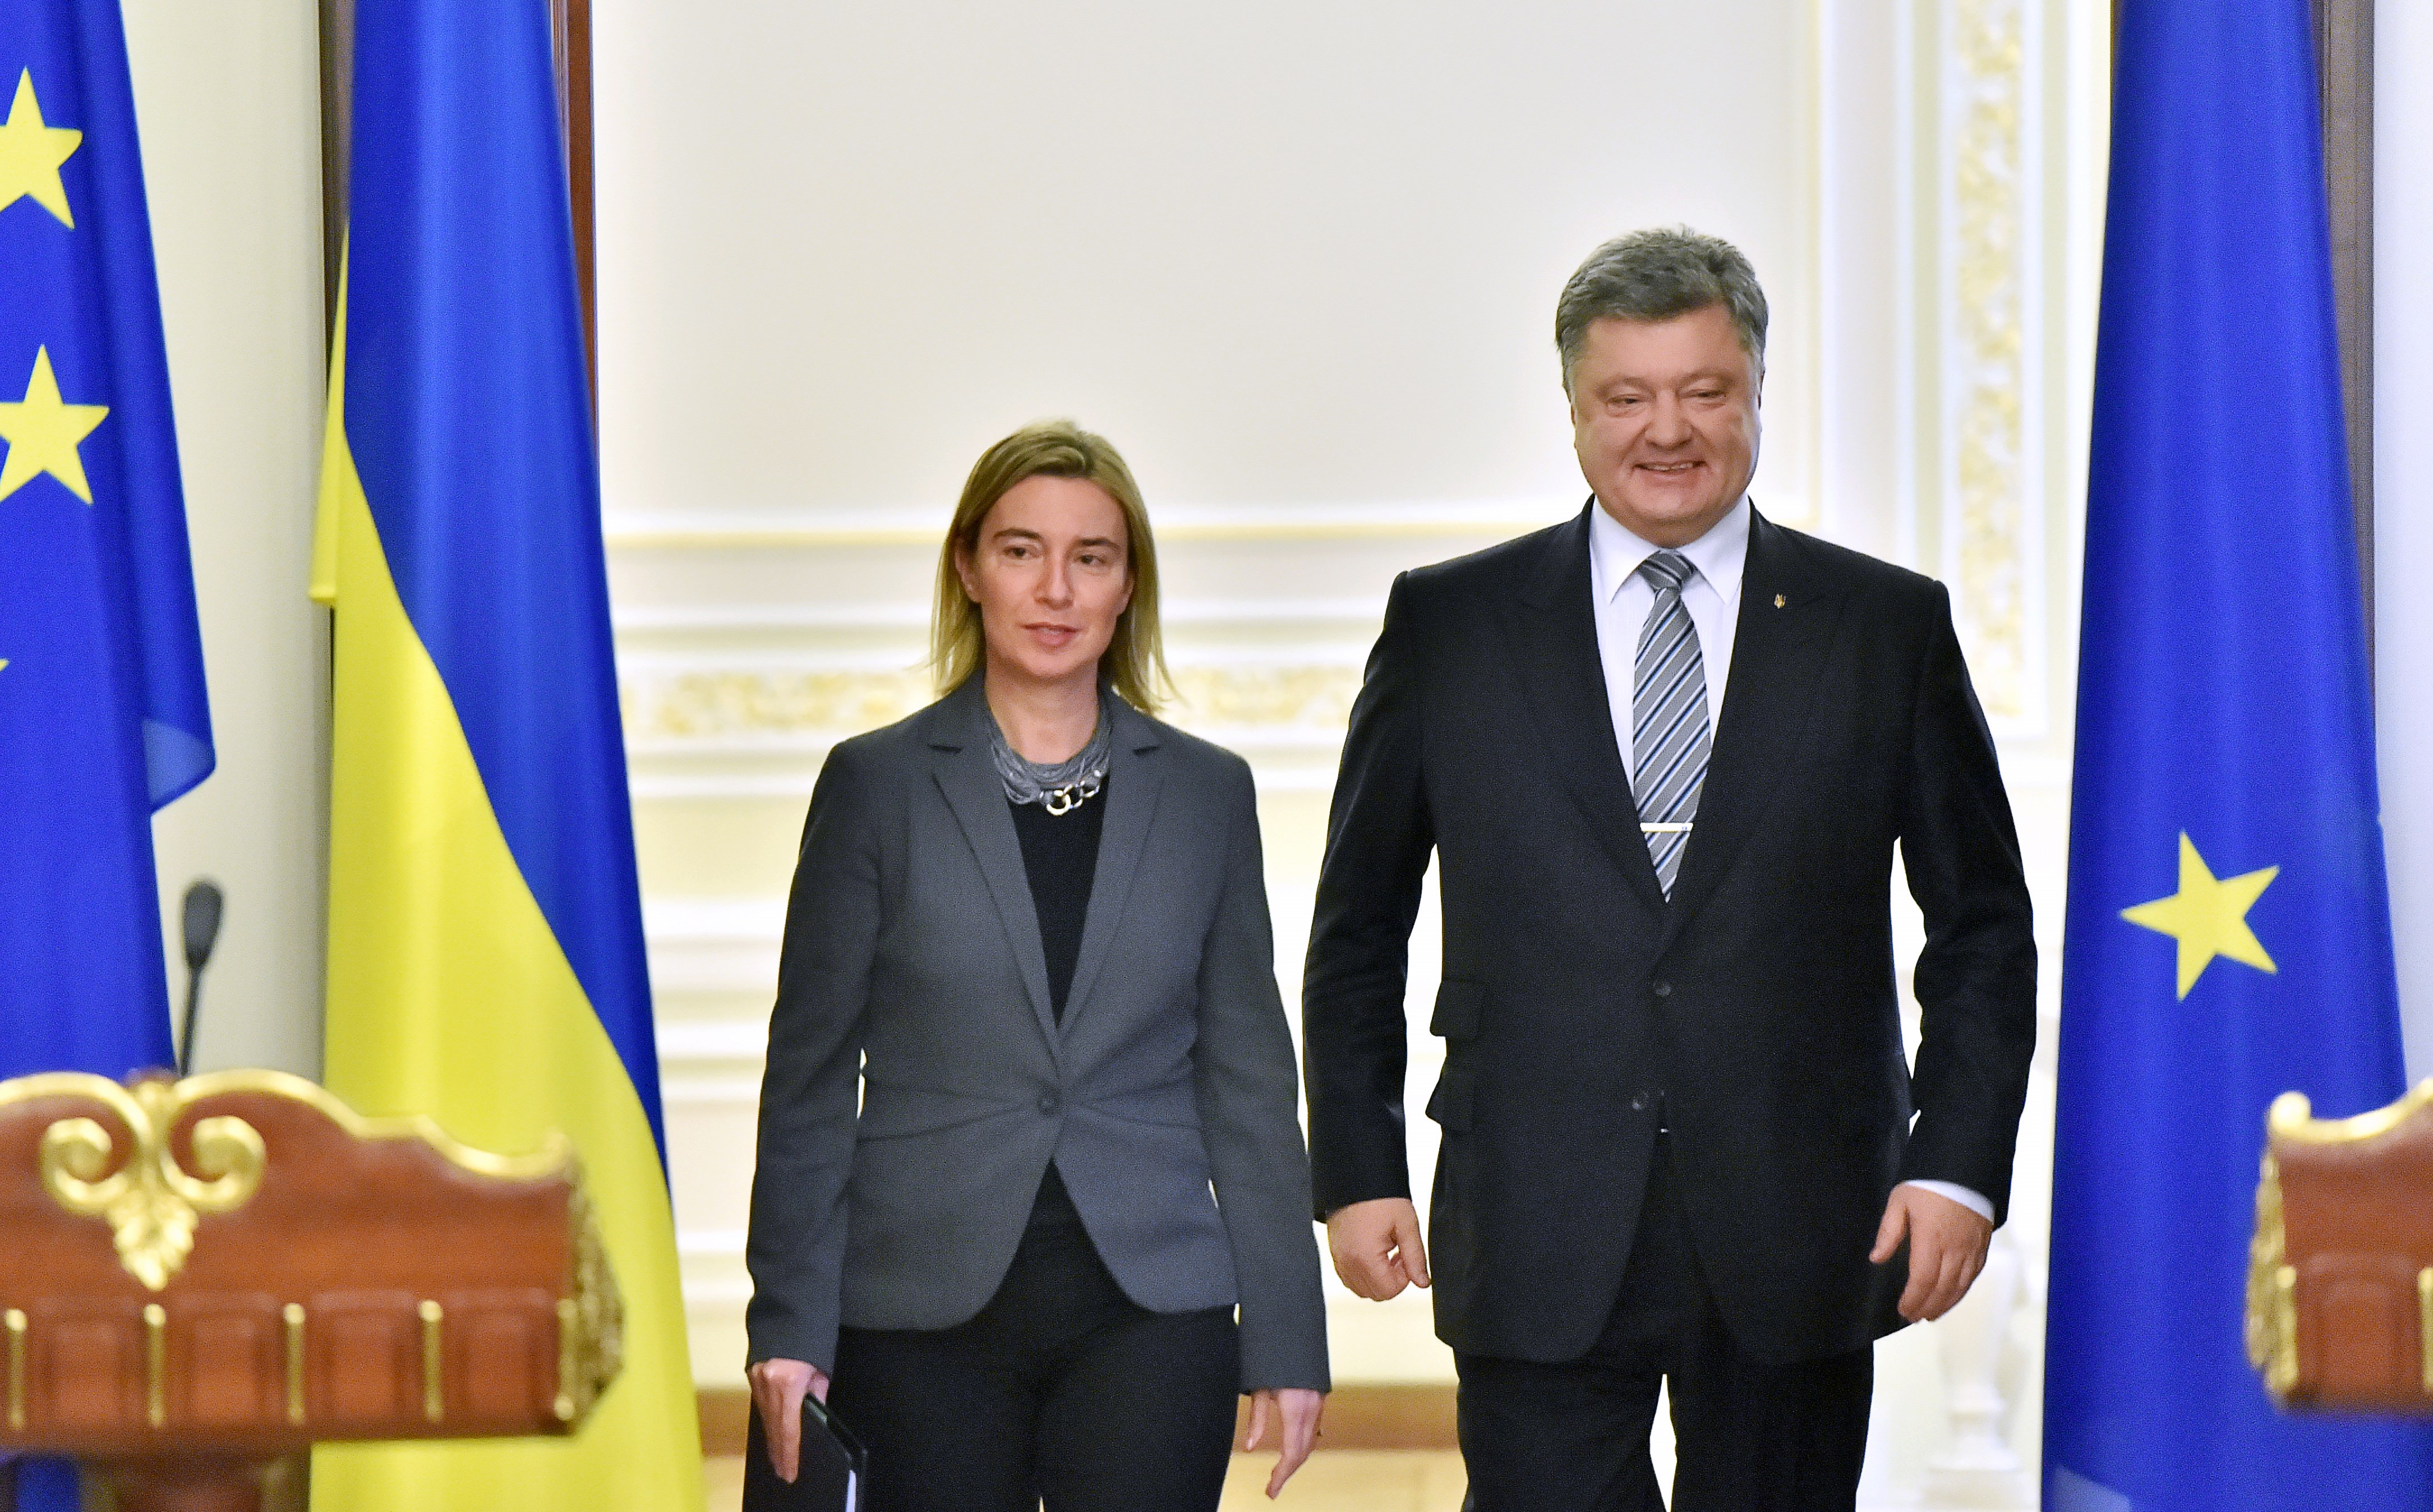 Șefa-diplomației-UE-Federica-Mogherini-a-cerut-președintelui-Ucrainei-Petro-Poroșenko-urgentarea-adoptării-legislației-anticorupție